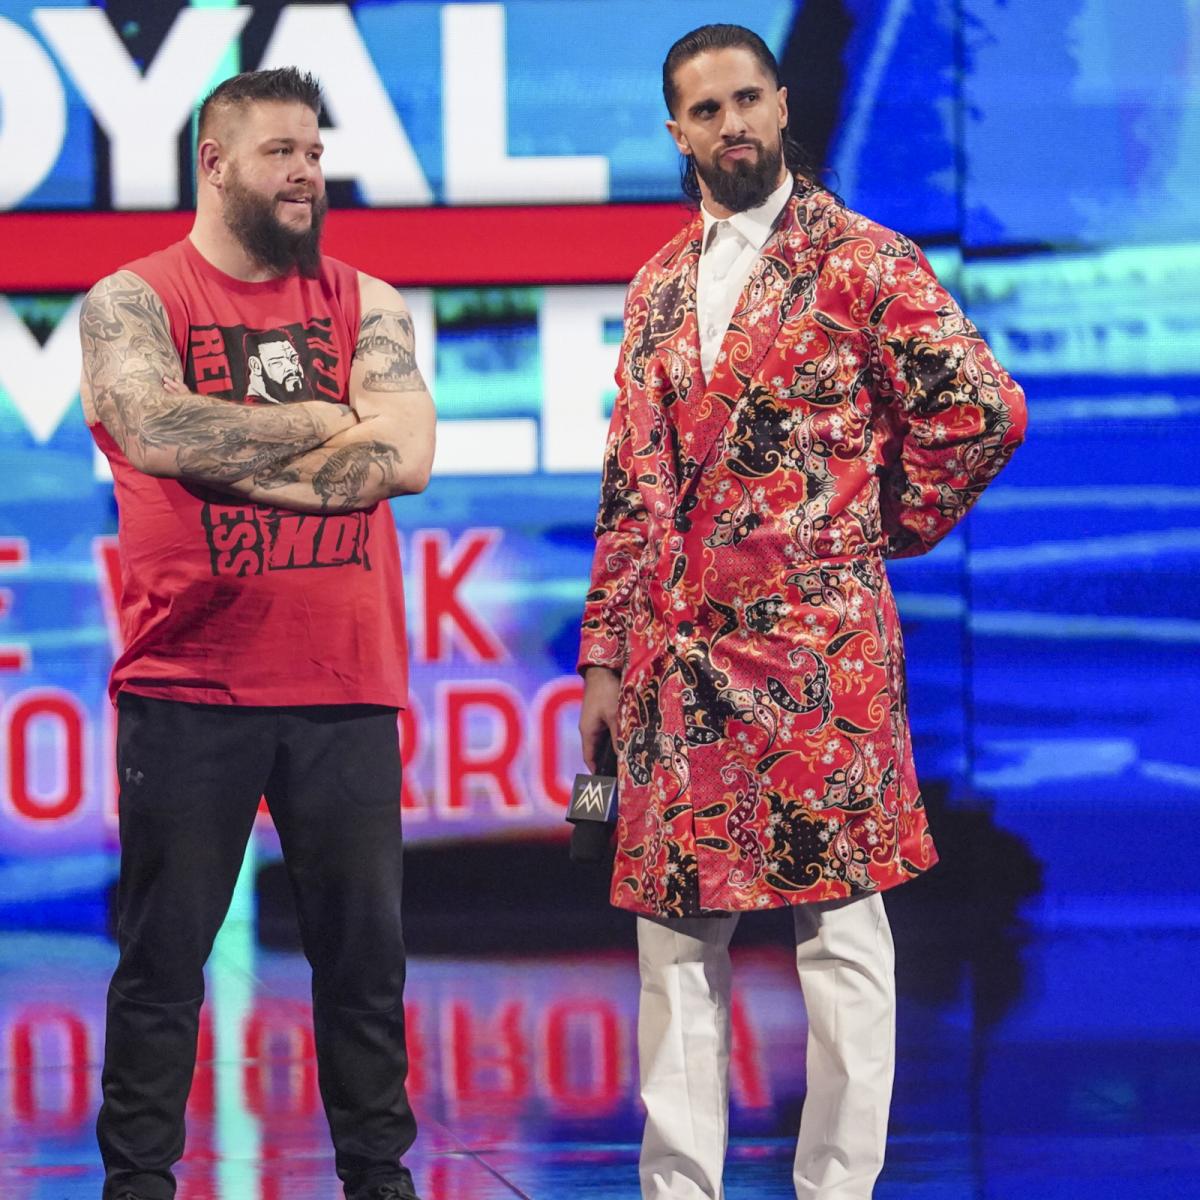 ステージからWWEユニバーサル王者レインズをにらむロリンズ（右）。左がオーエンズ（C）2022 WWE, Inc. All Rights Reserved.